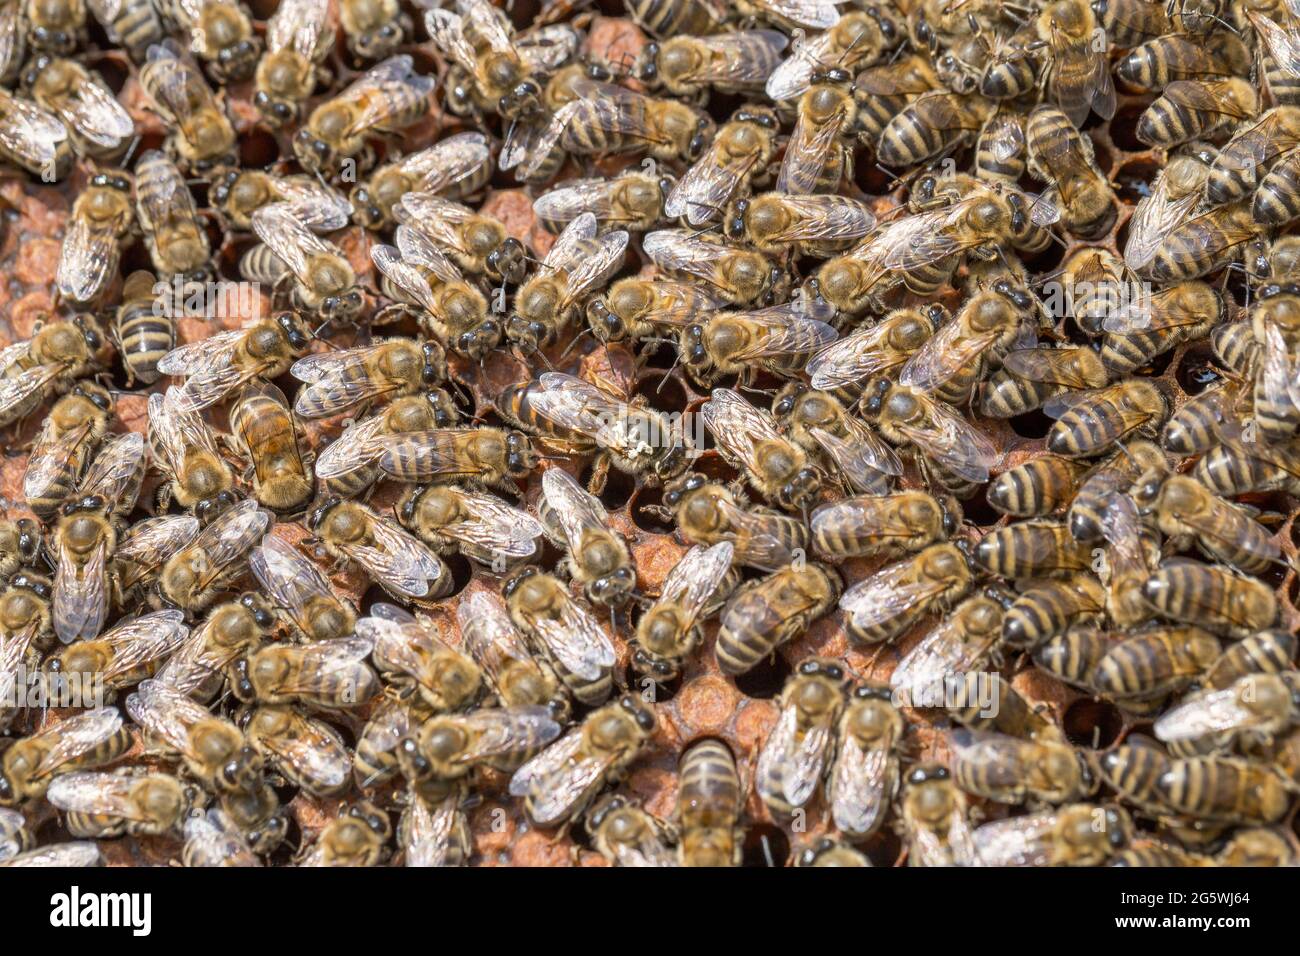 Panal de miel, abejas, miel en sellado y no sellado su célula y polen - cierre Foto de stock